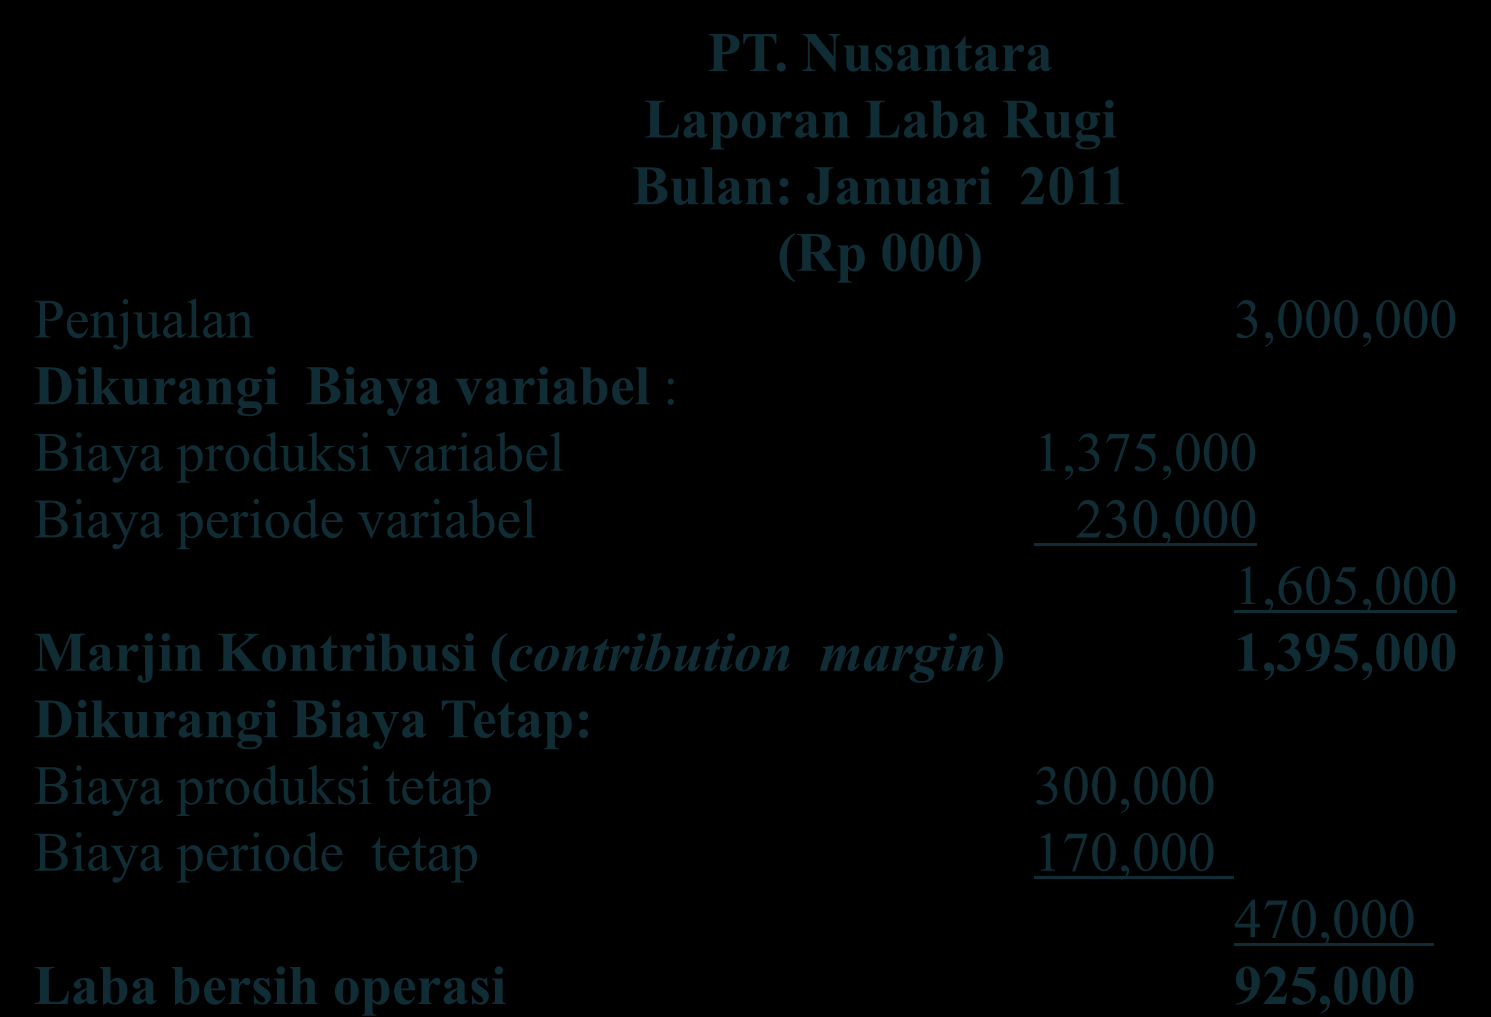 PT. Nusantara Laporan Laba Rugi Bulan: Januari 2011 (Rp 000) Penjualan 3,000,000 Dikurangi Biaya variabel : Biaya produksi variabel 1,375,000 Biaya periode variabel 230,000